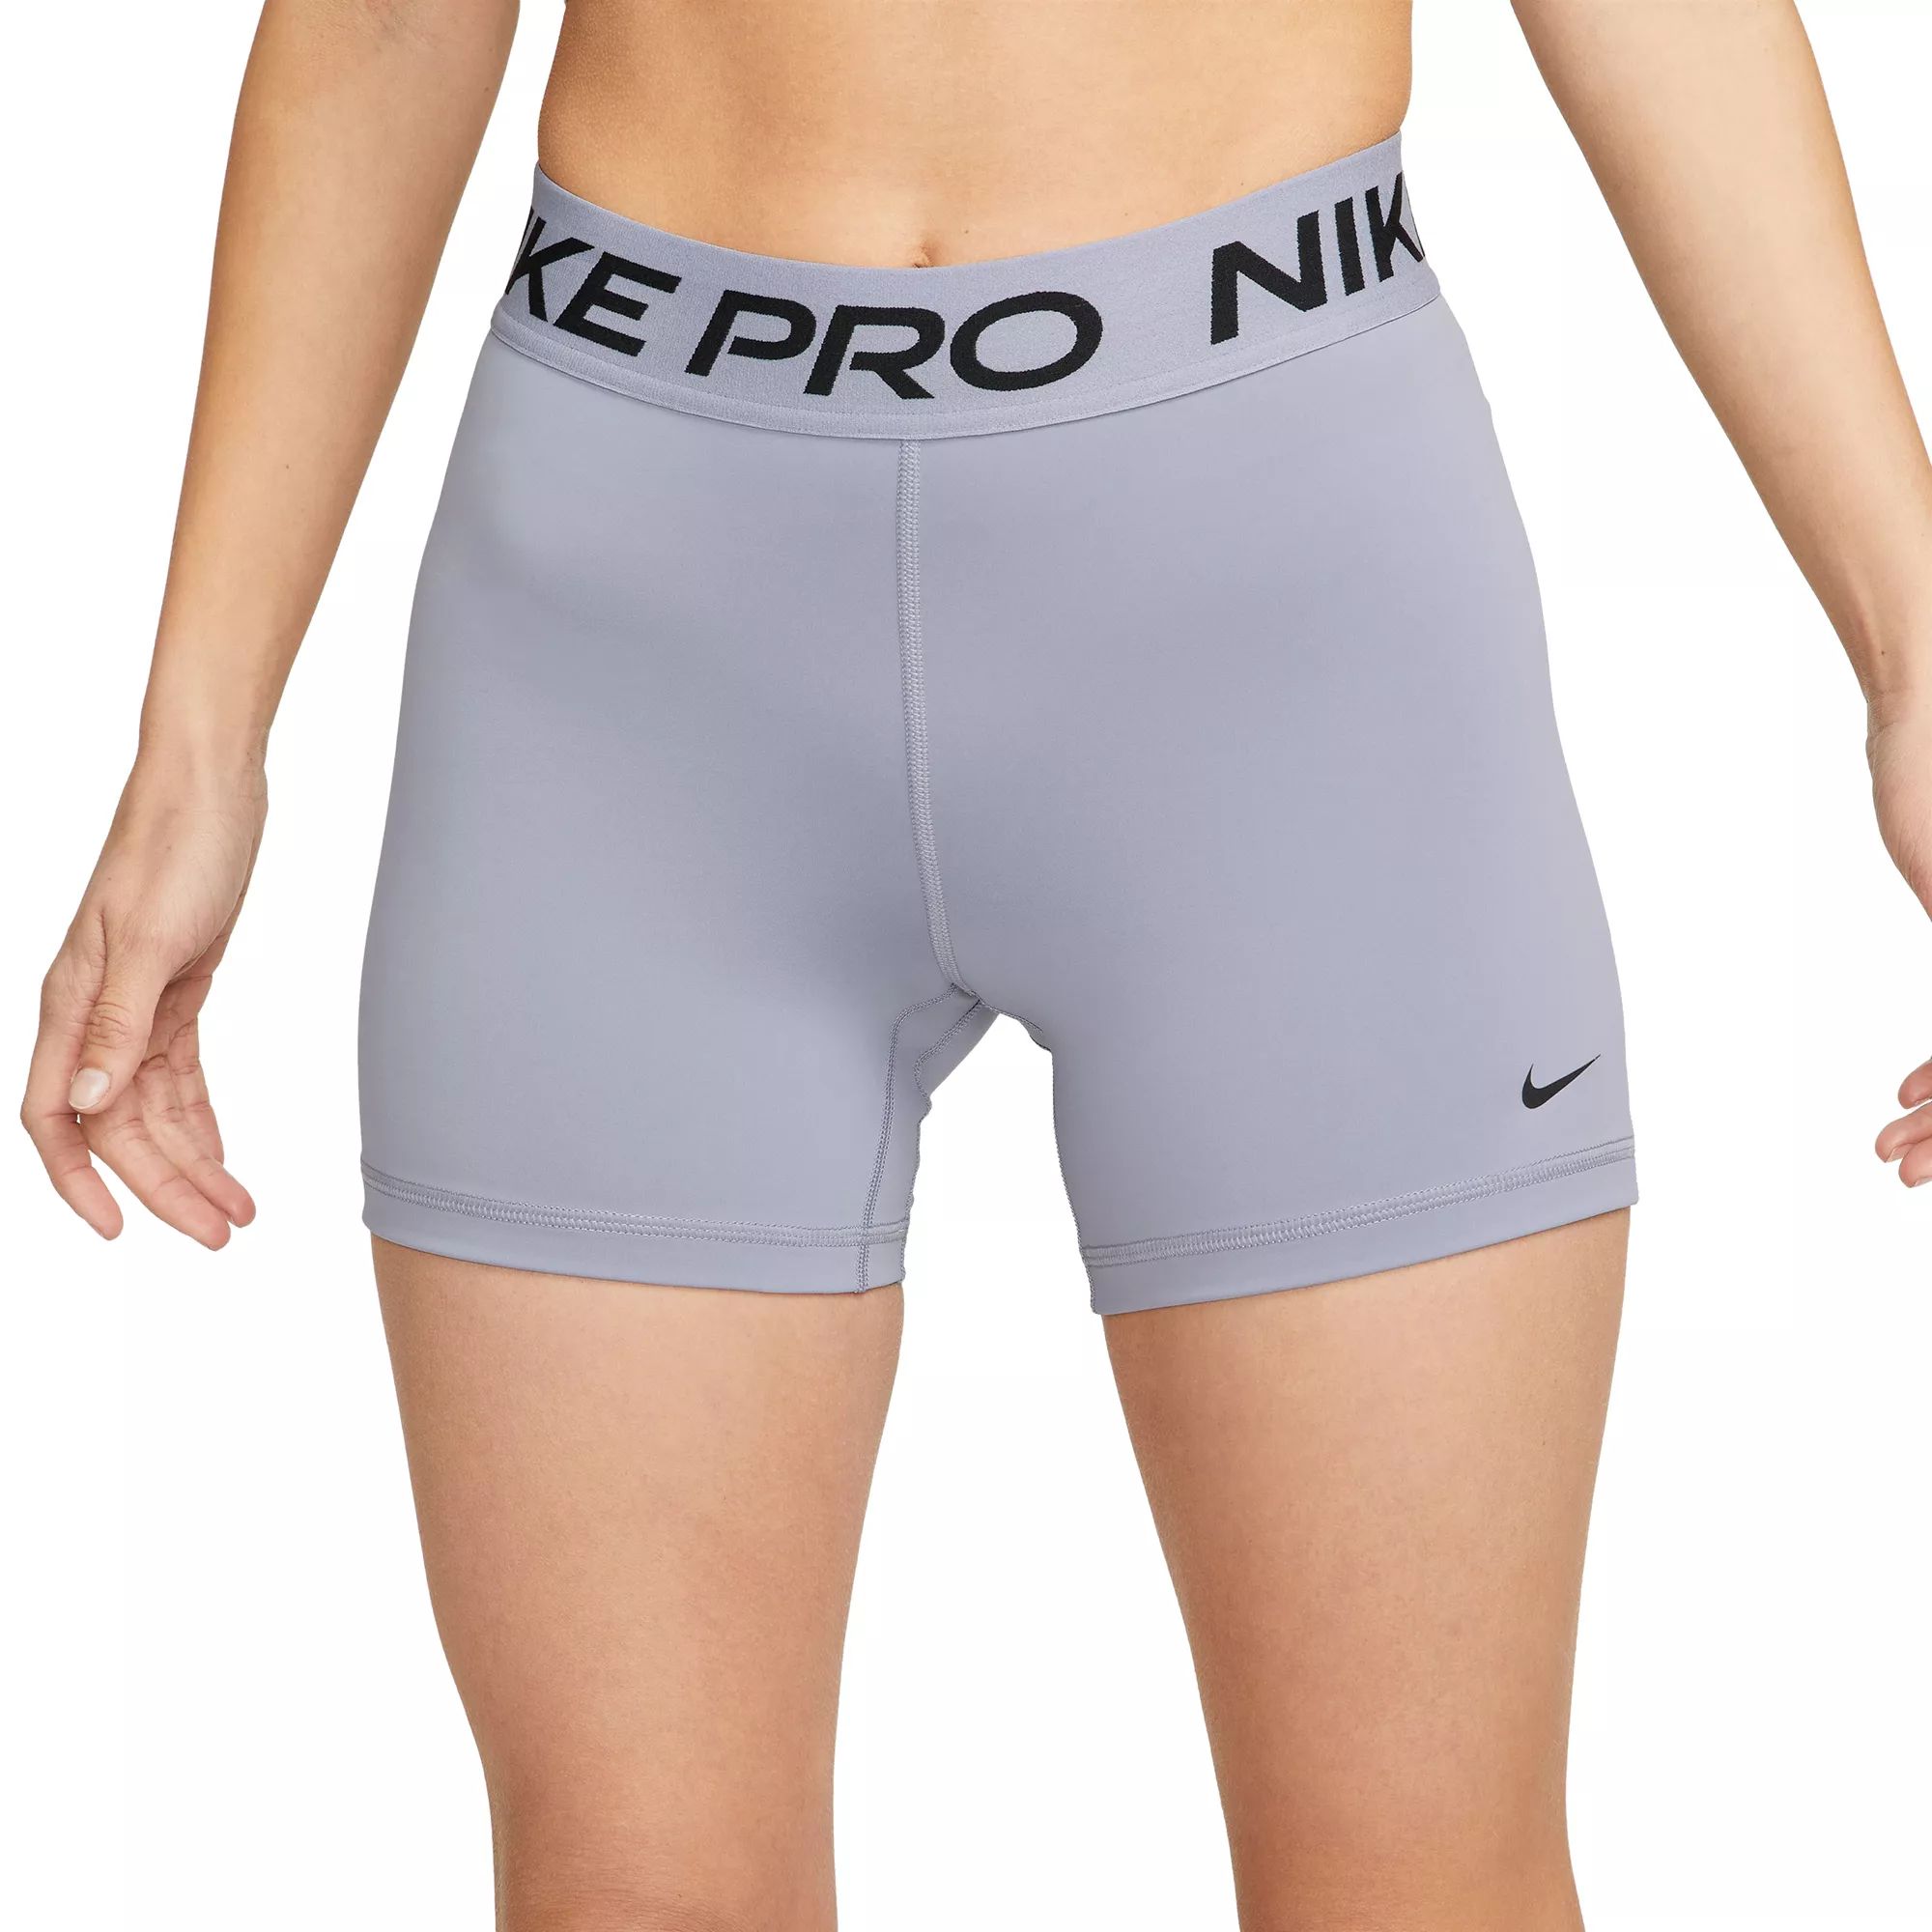 Nike Women's Pro 365 5” Shorts, XL, Indigo Haze | Dick's Sporting Goods